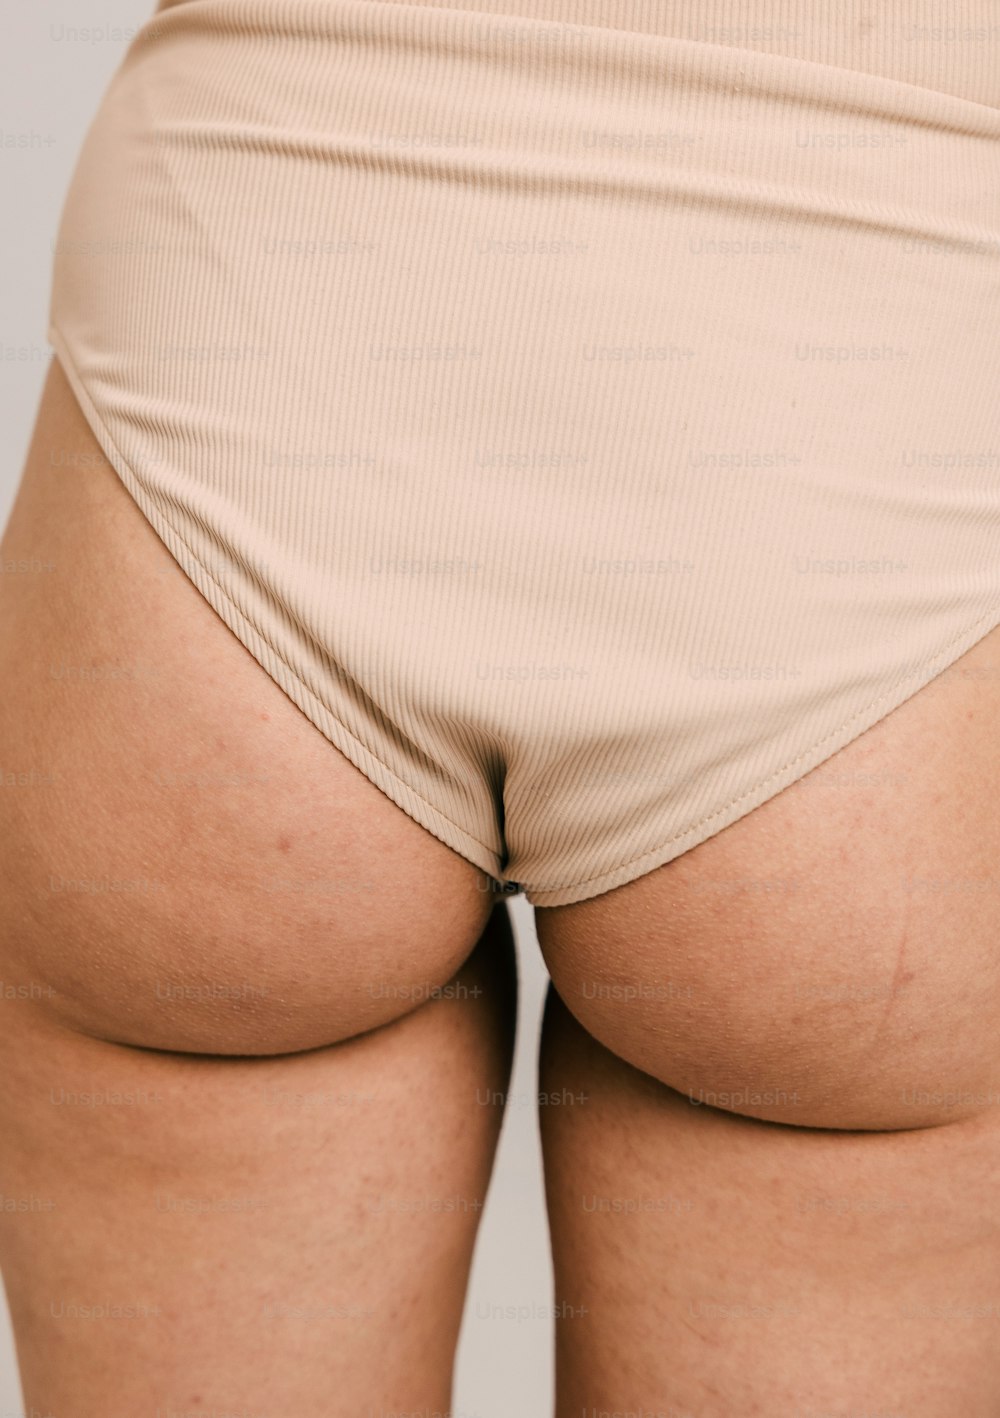 그녀의 엉덩이를 보여주는 여자의 엉덩이의 클로즈업